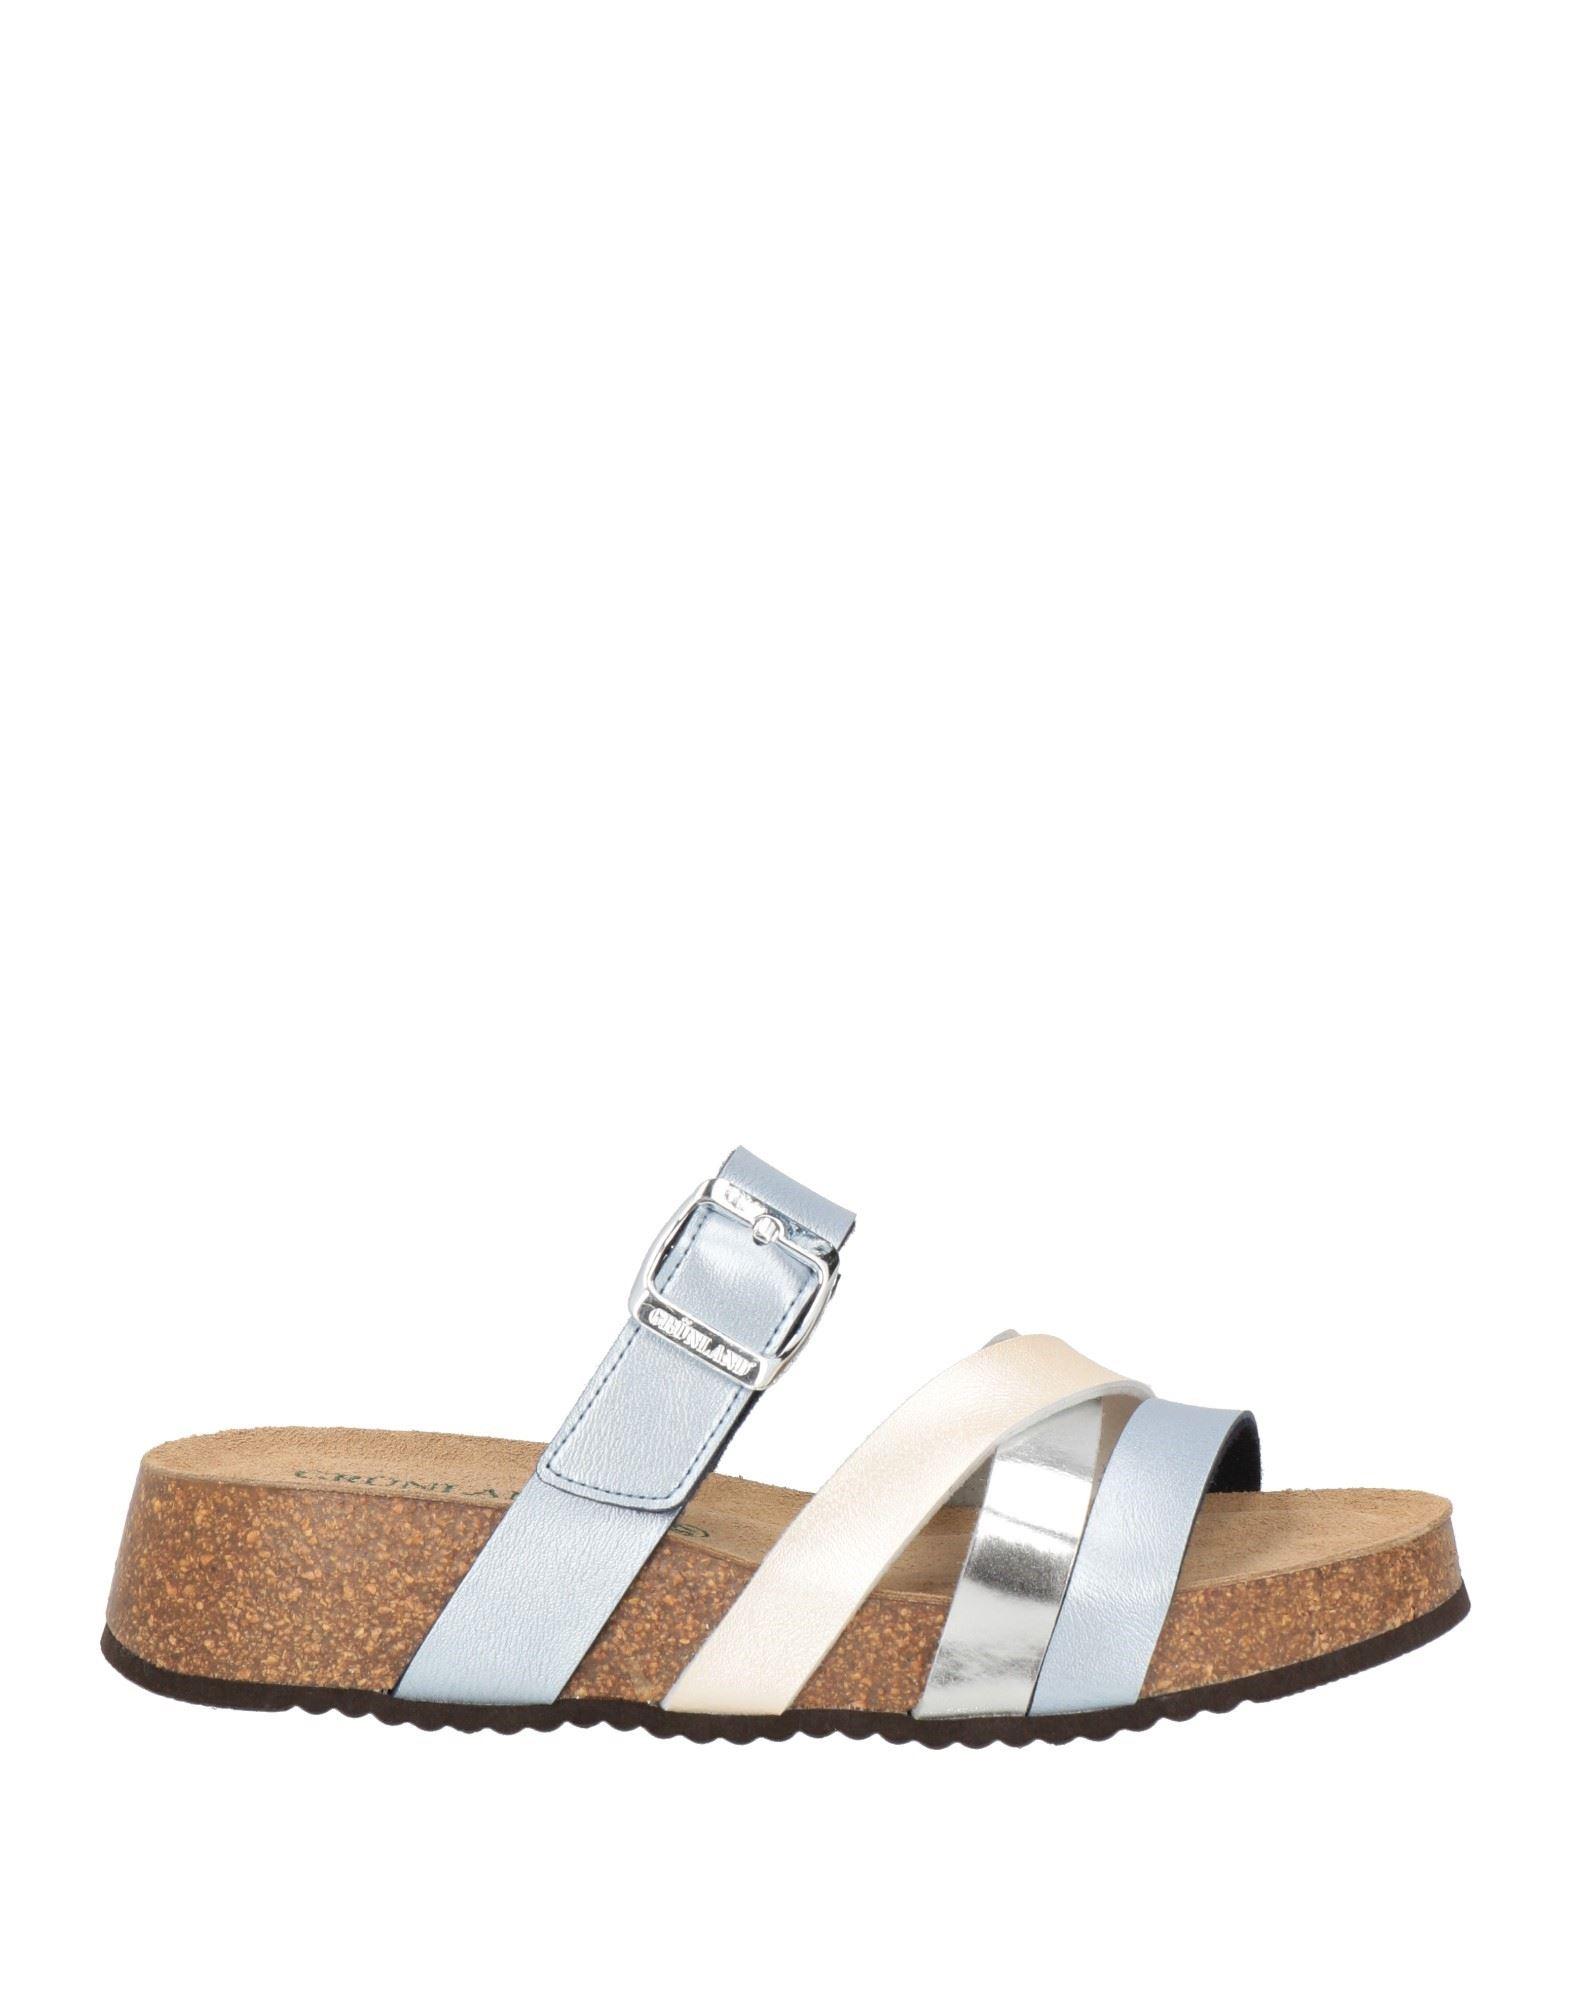 Grünland Sandals in White | Lyst